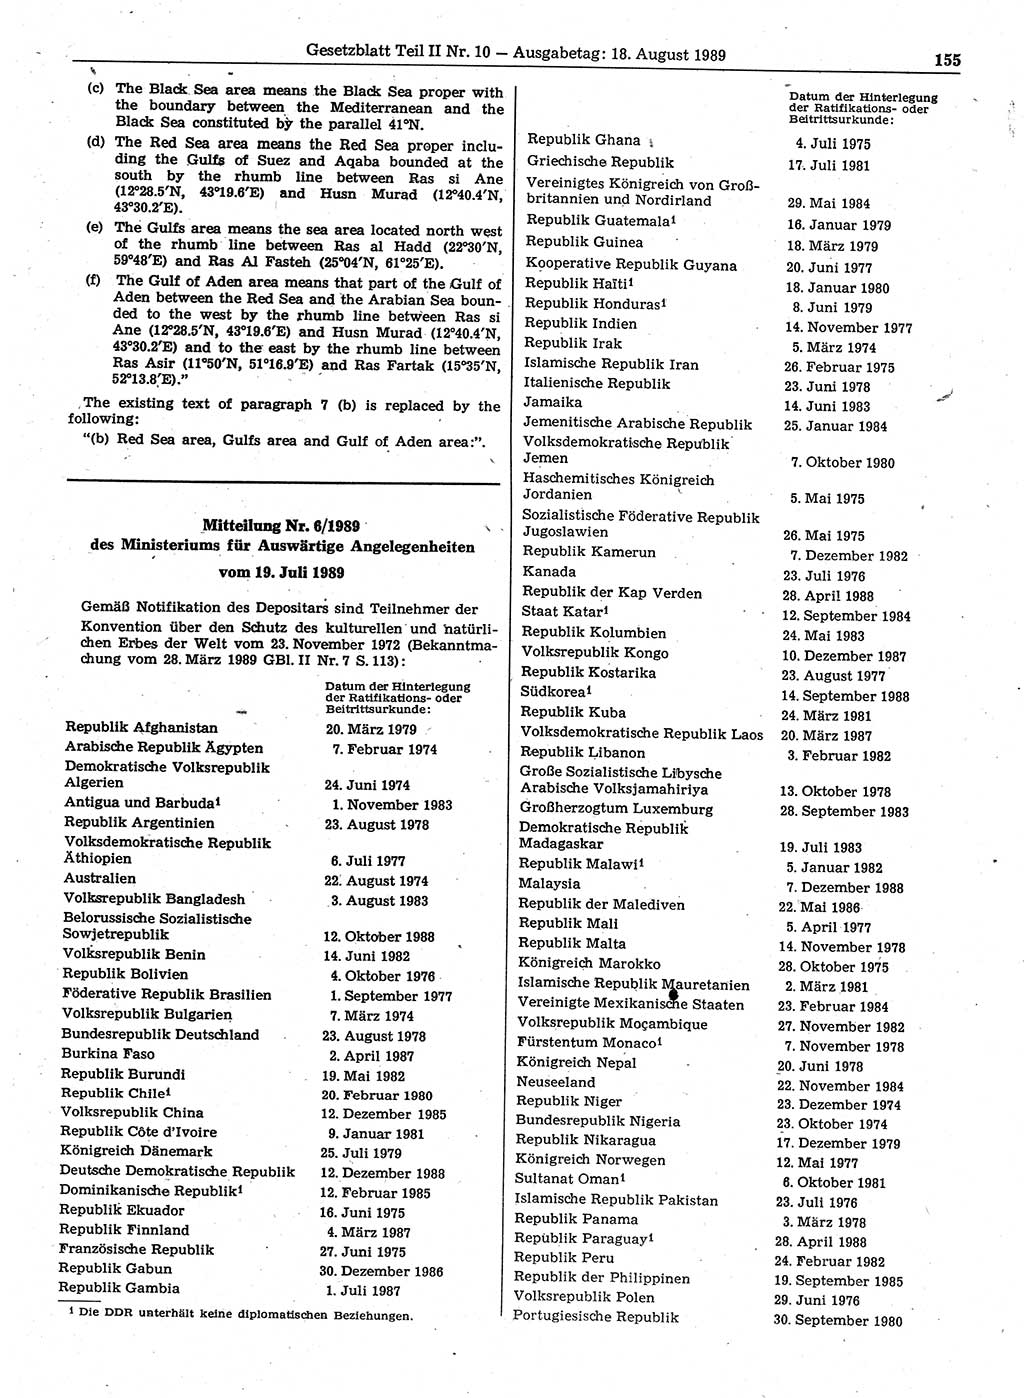 Gesetzblatt (GBl.) der Deutschen Demokratischen Republik (DDR) Teil ⅠⅠ 1989, Seite 155 (GBl. DDR ⅠⅠ 1989, S. 155)